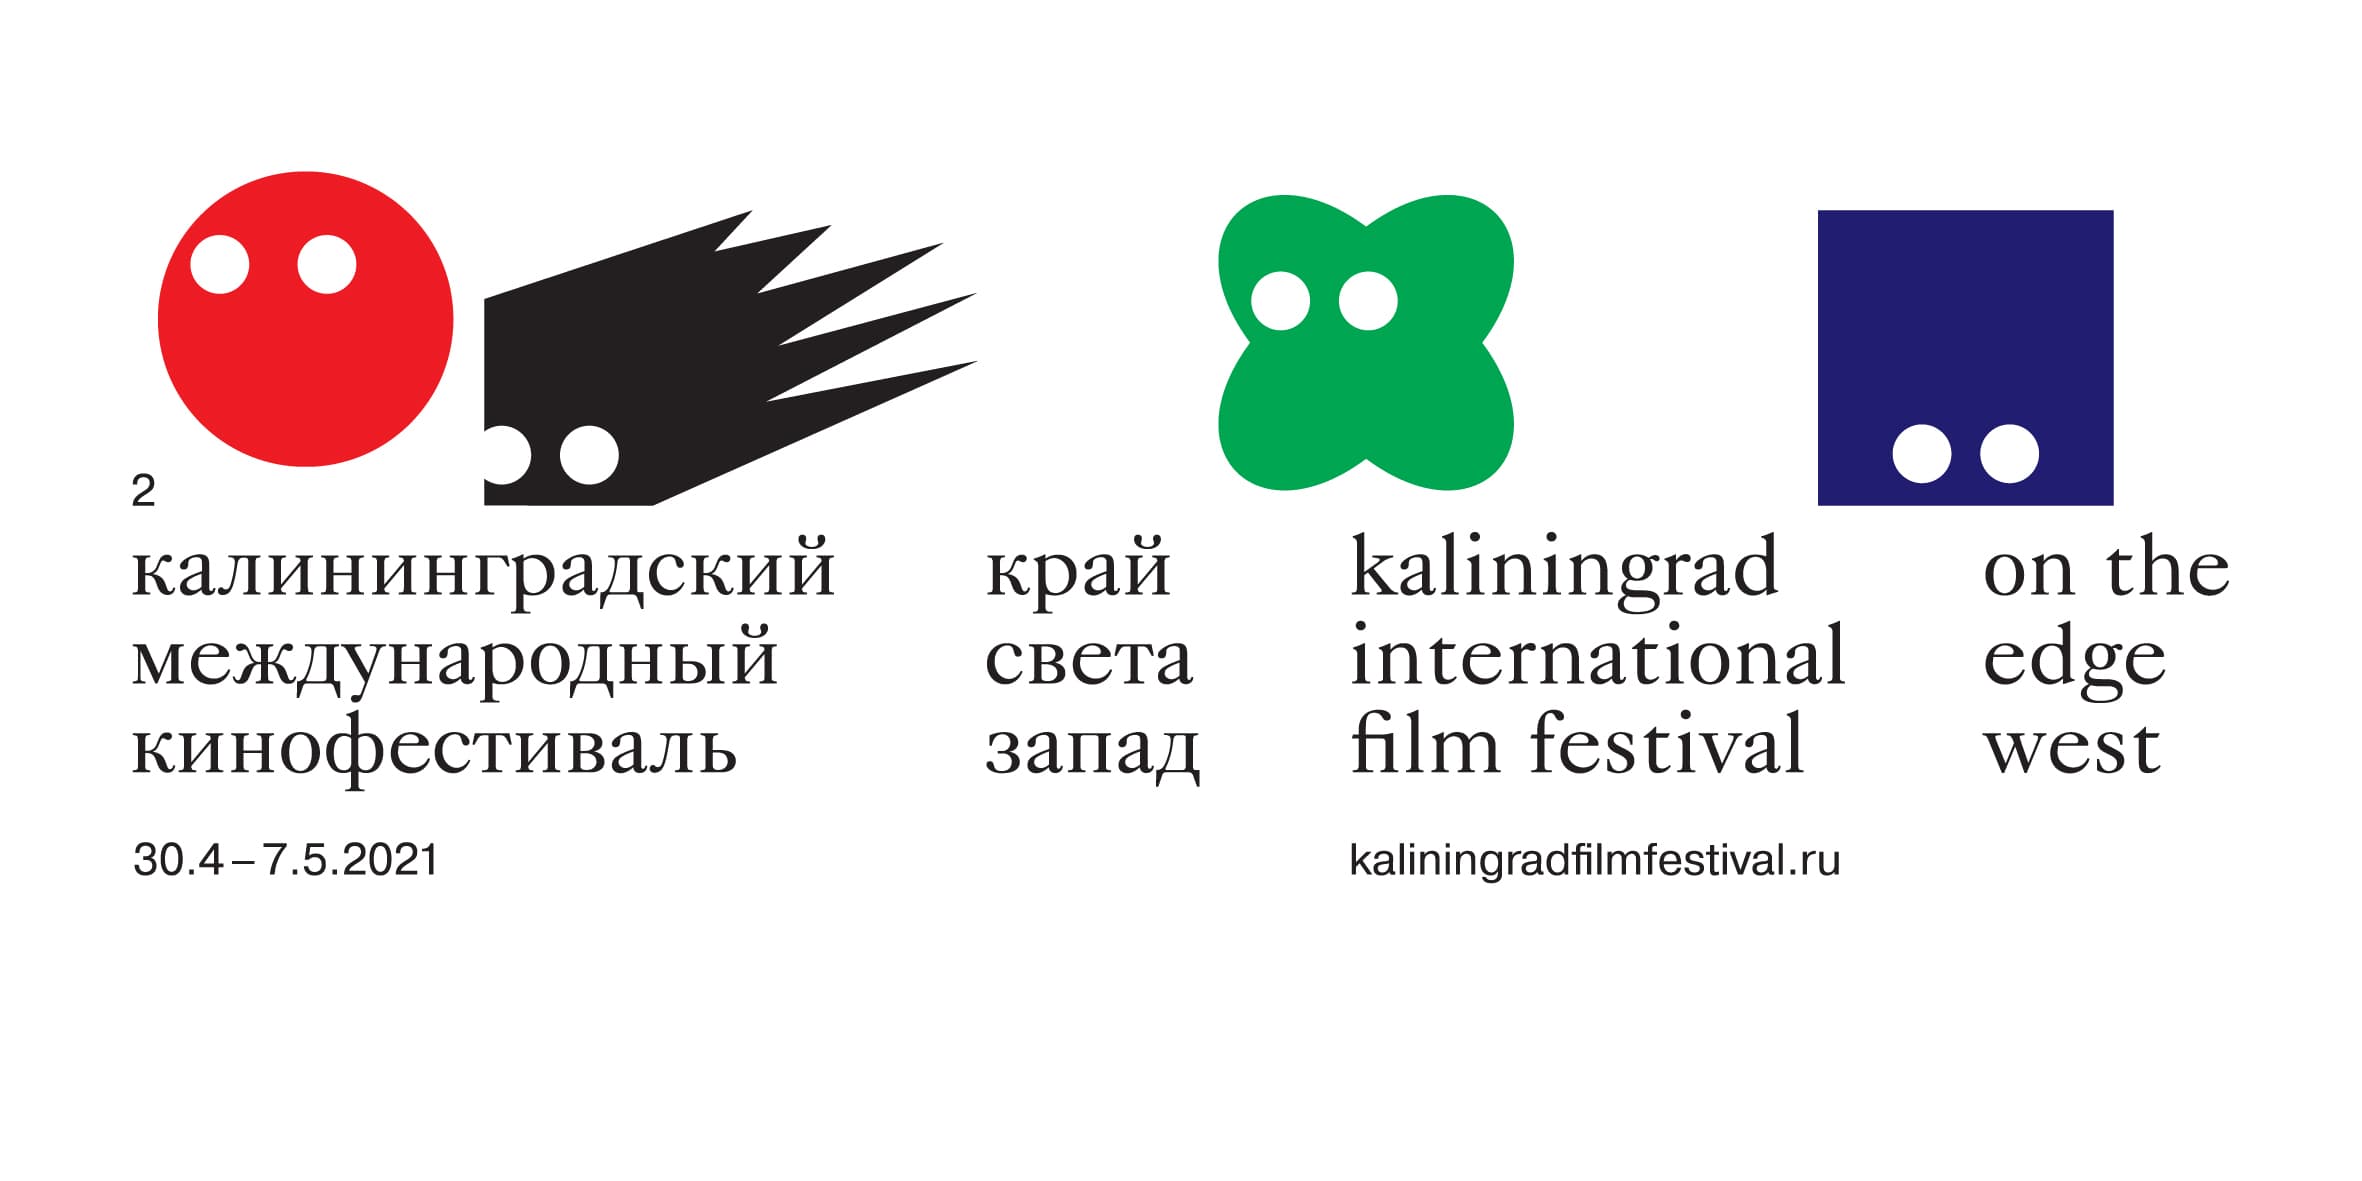 Международный Калининградский кинофестиваль «Край света. Запад» объявляет о наборе в мастерские и книге о Сельме